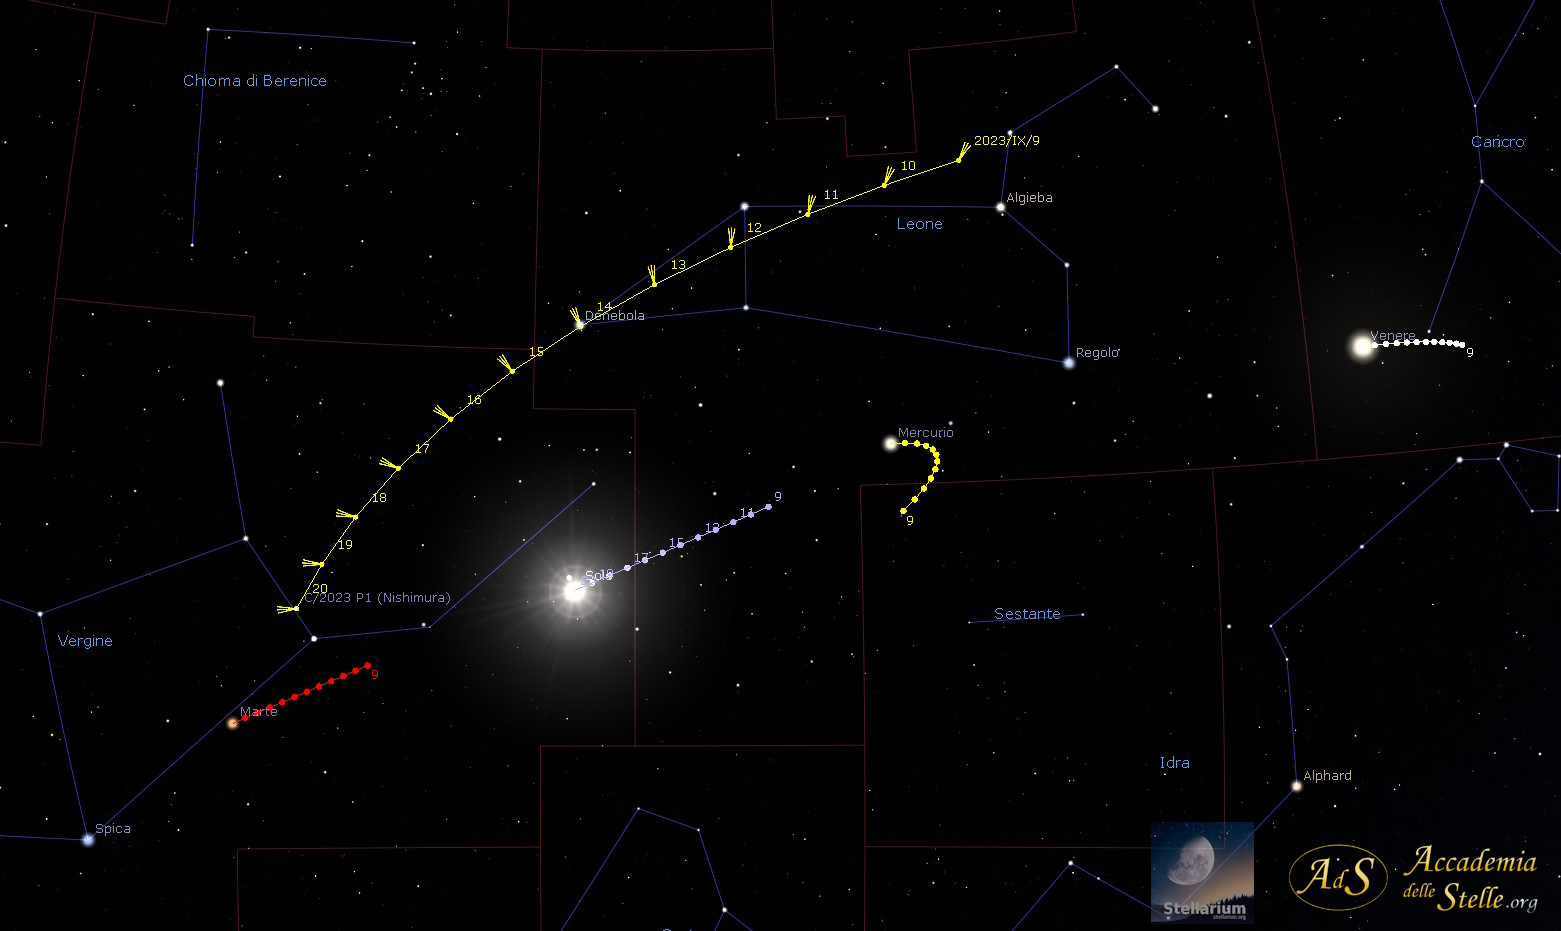 La posizione della cometa nel cielo dal 9 al 21 settembre, insieme a quelle del Sole e dei pianeti nelle vicinanze